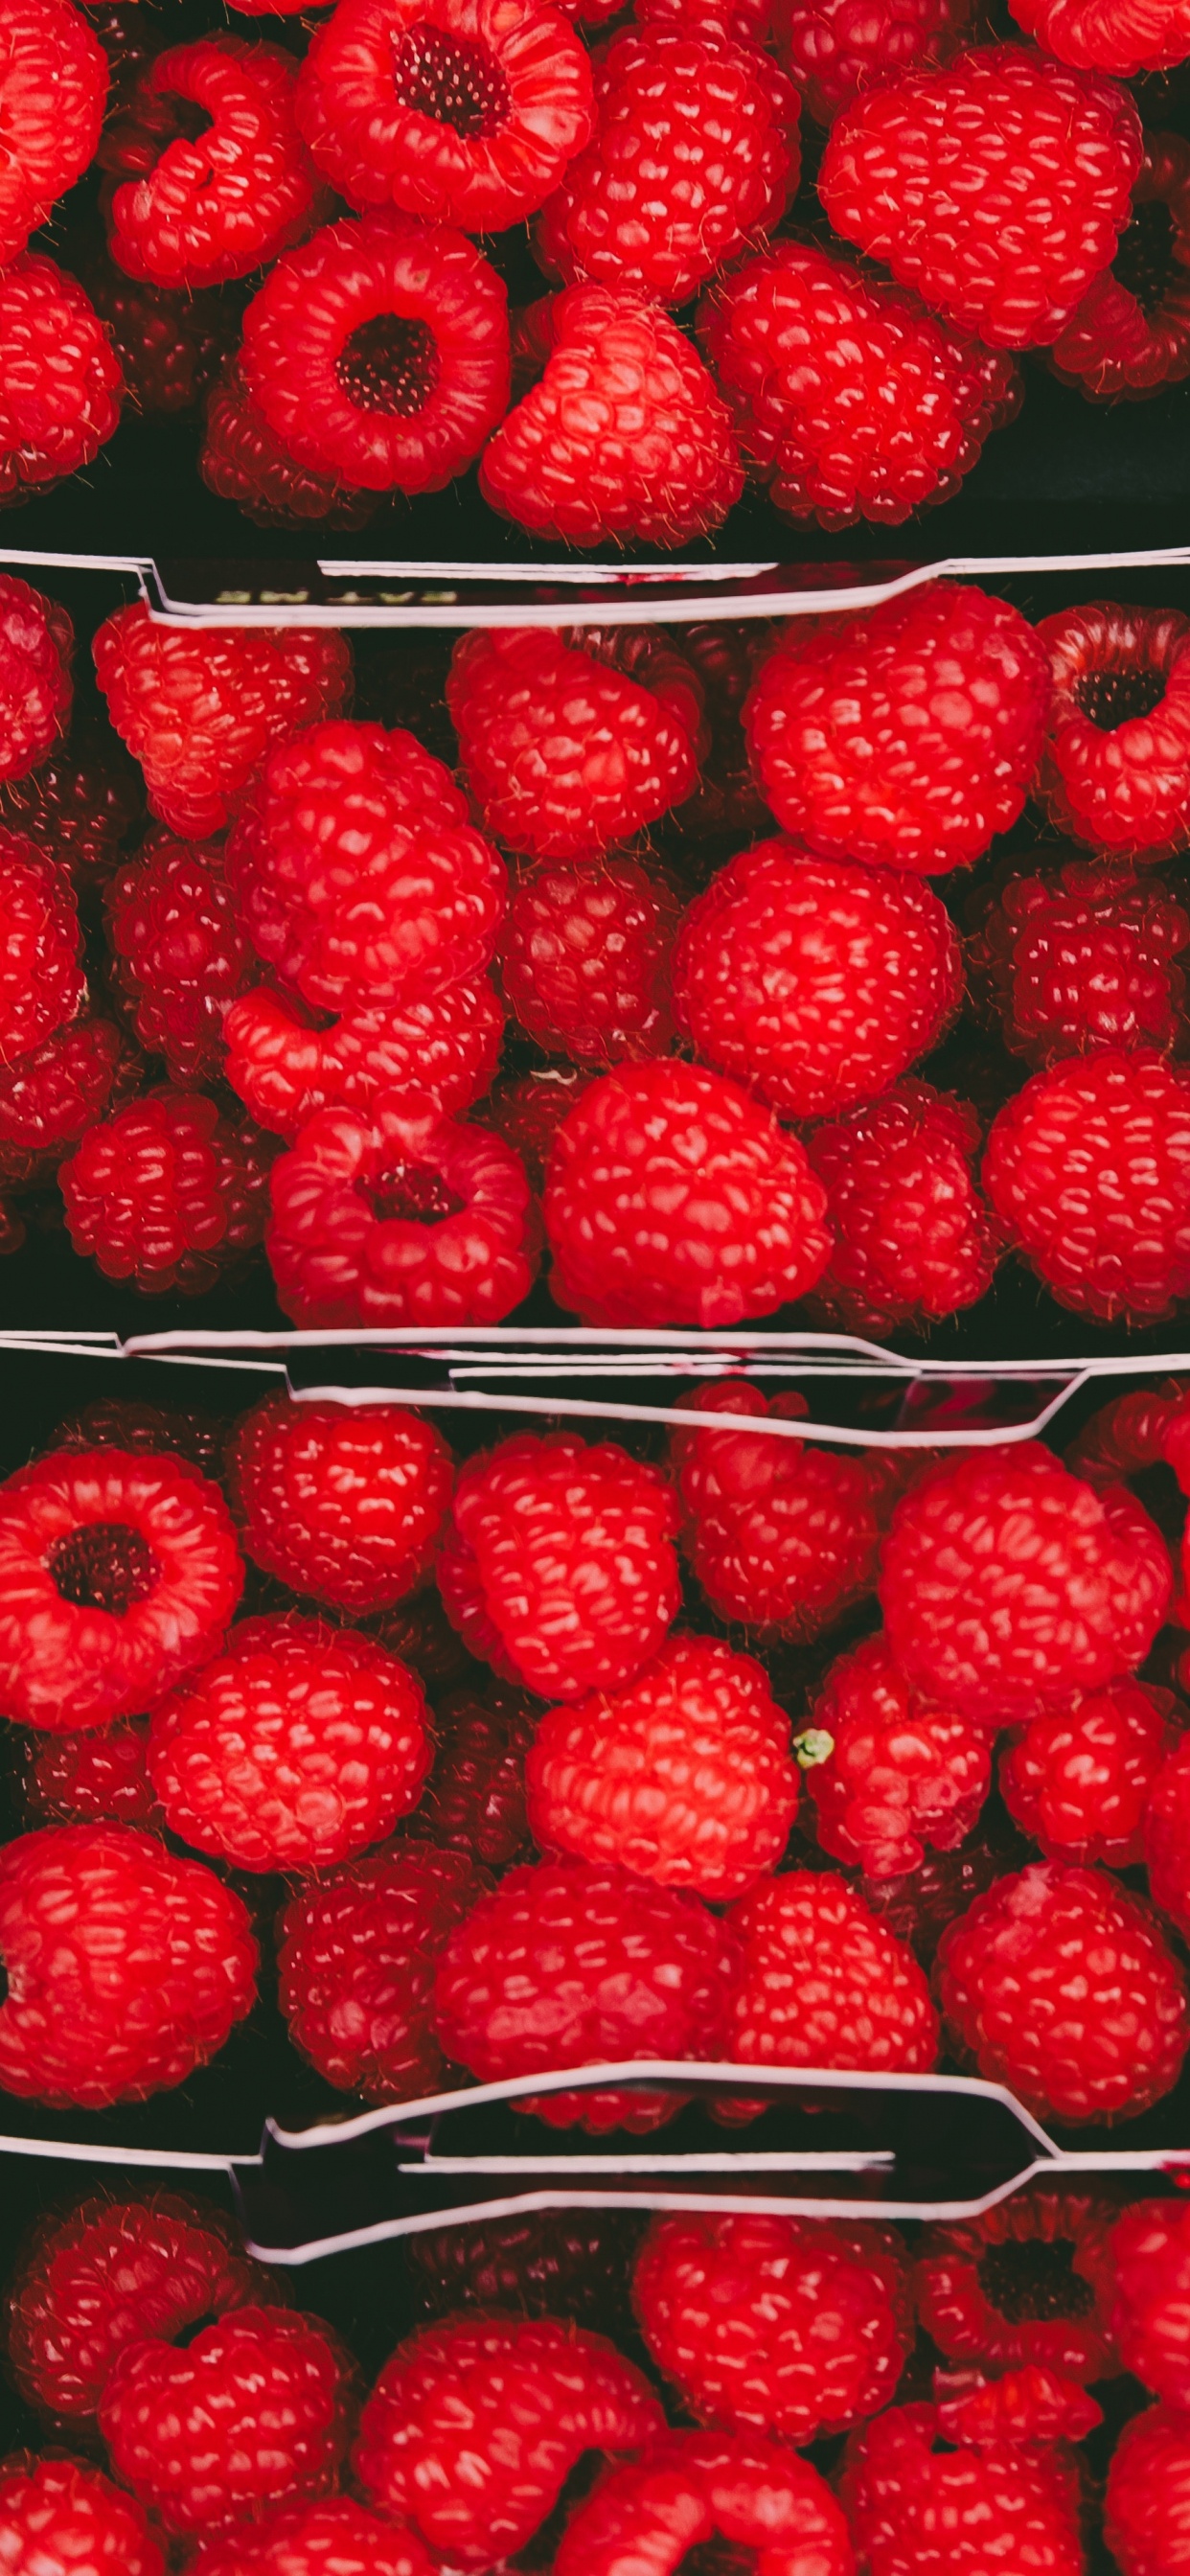 天然的食物, 当地的食物, 红色的, 无核果, 树莓 壁纸 1242x2688 允许